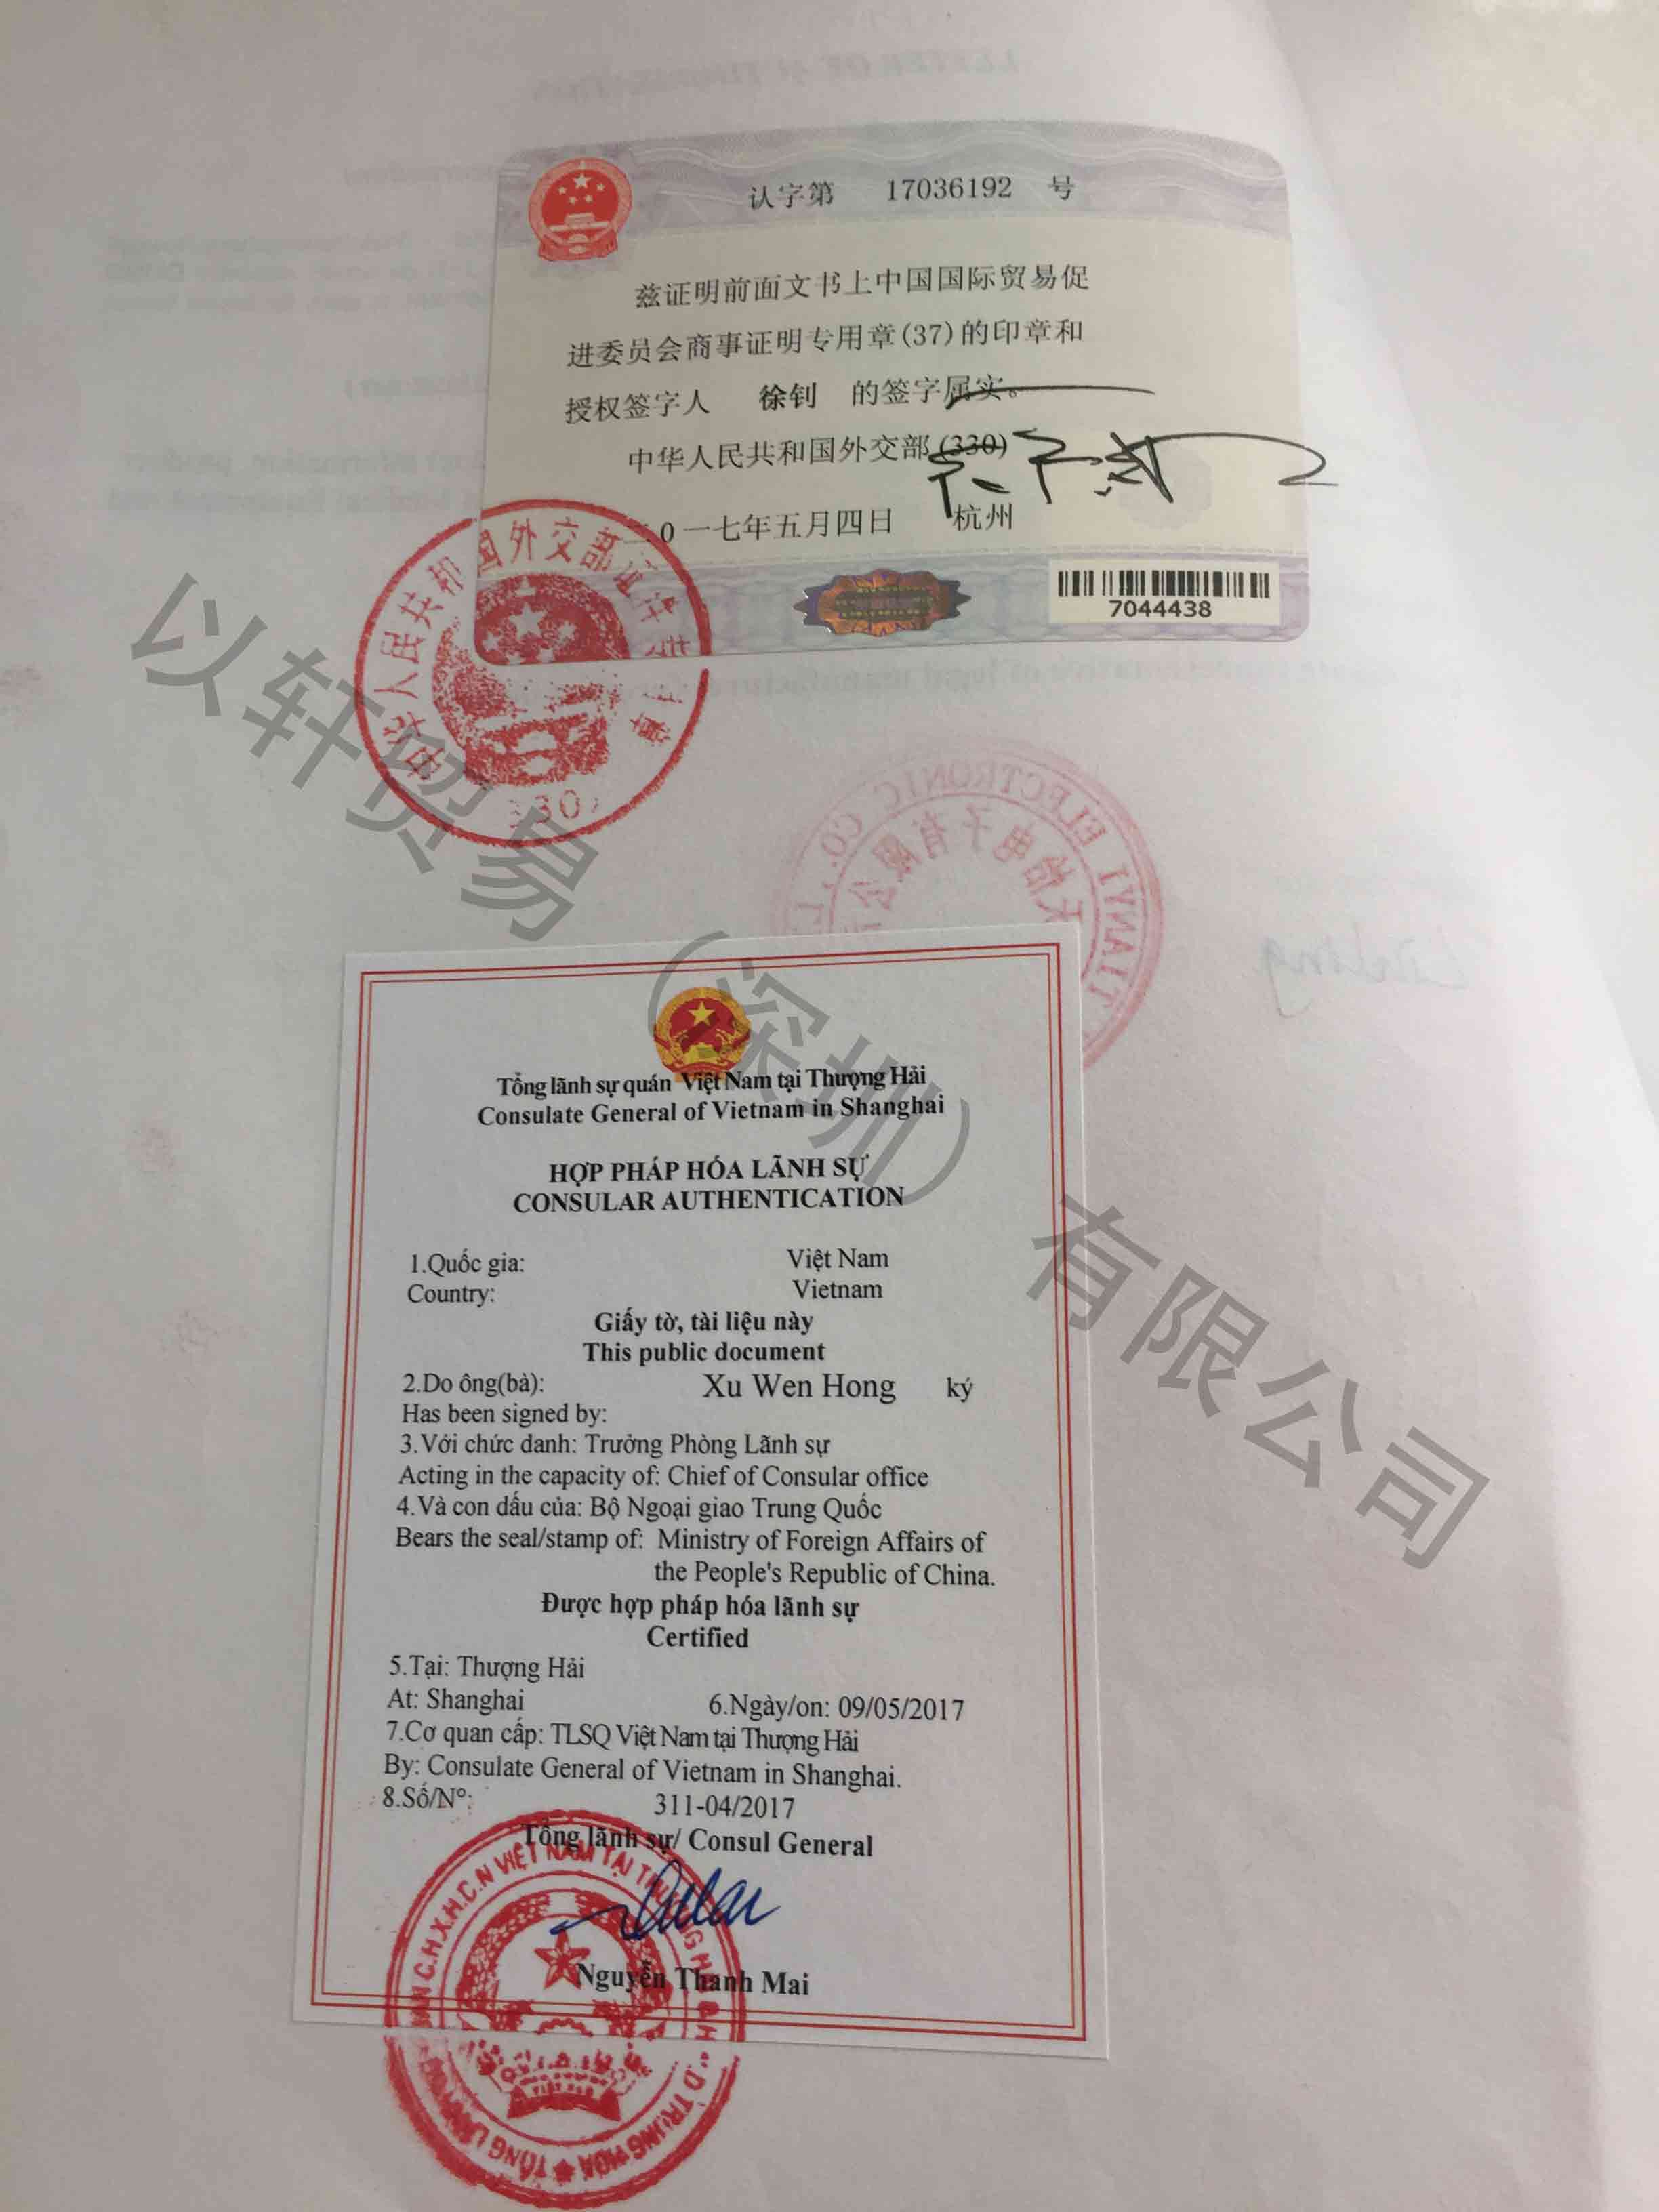 LOA授权委托书越南领事馆双认证